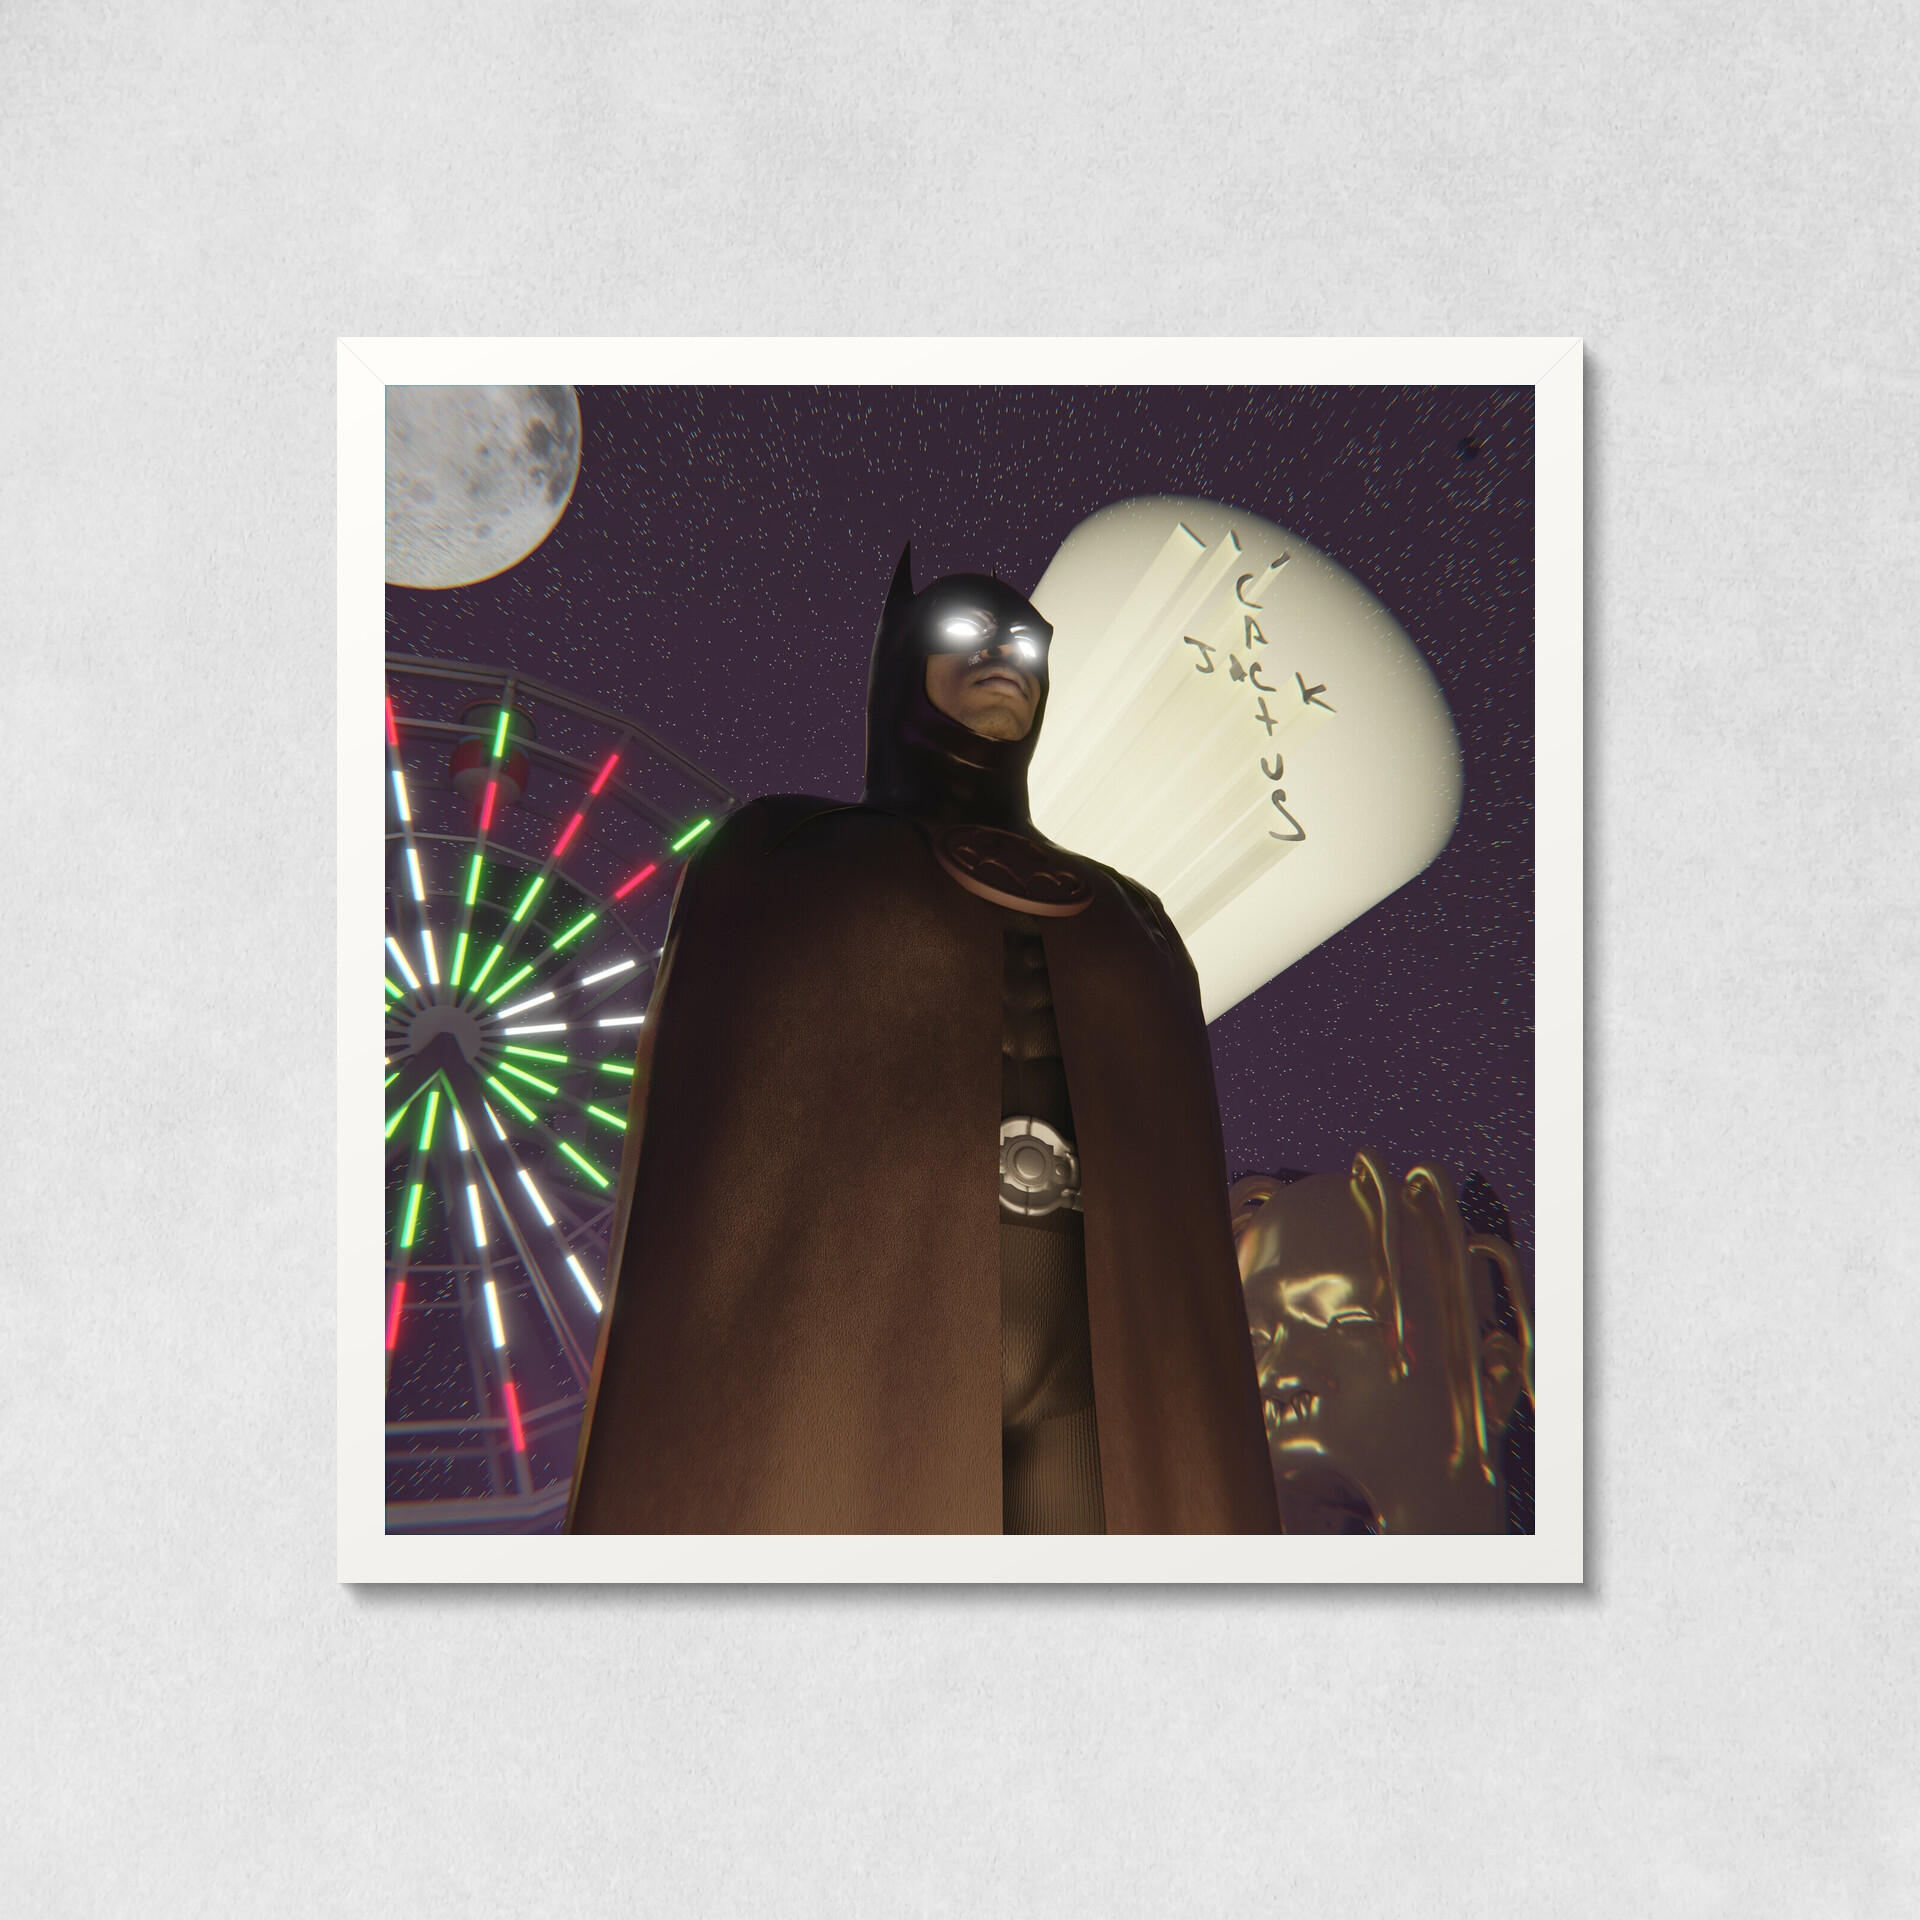 No Jumper on X: #travisscott's batman costume as his album covers